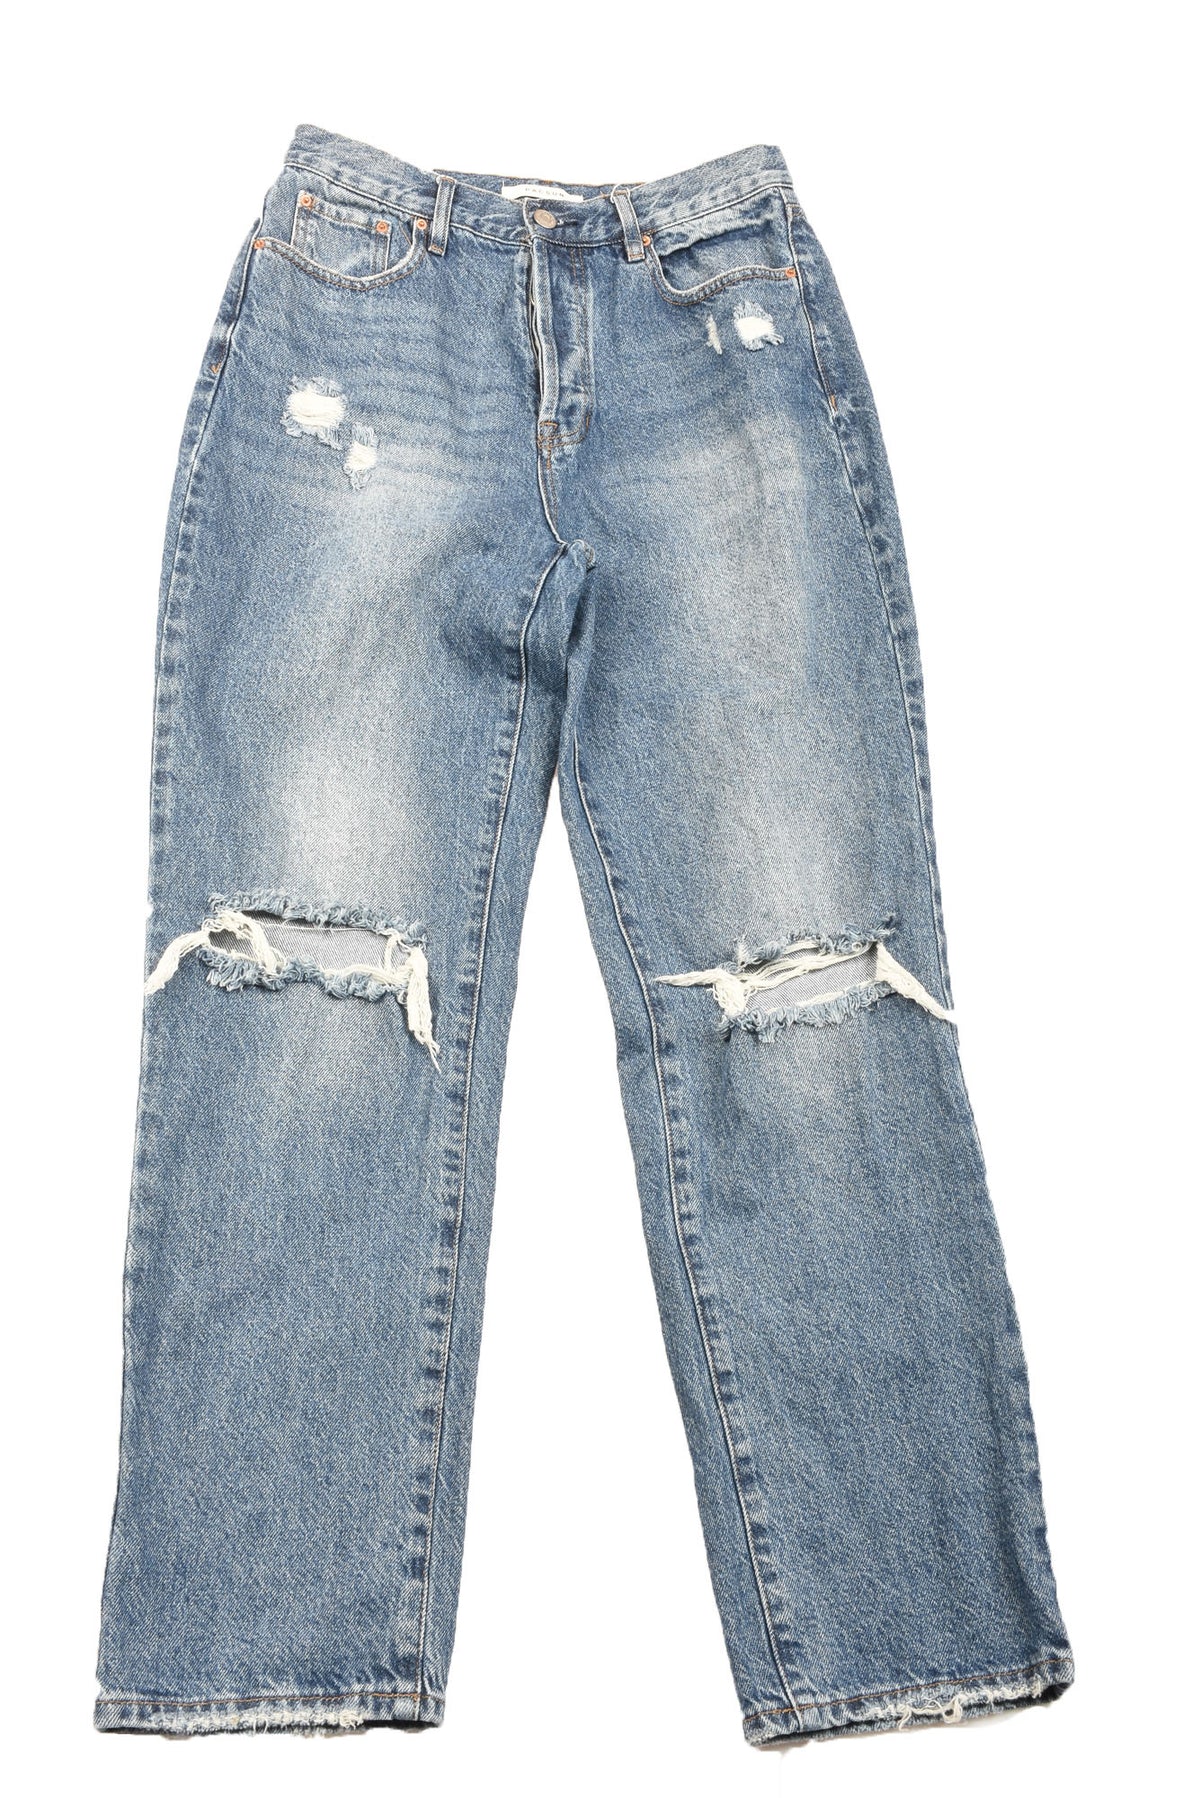 Pacsun Size 28 Women&#39;s Jeans